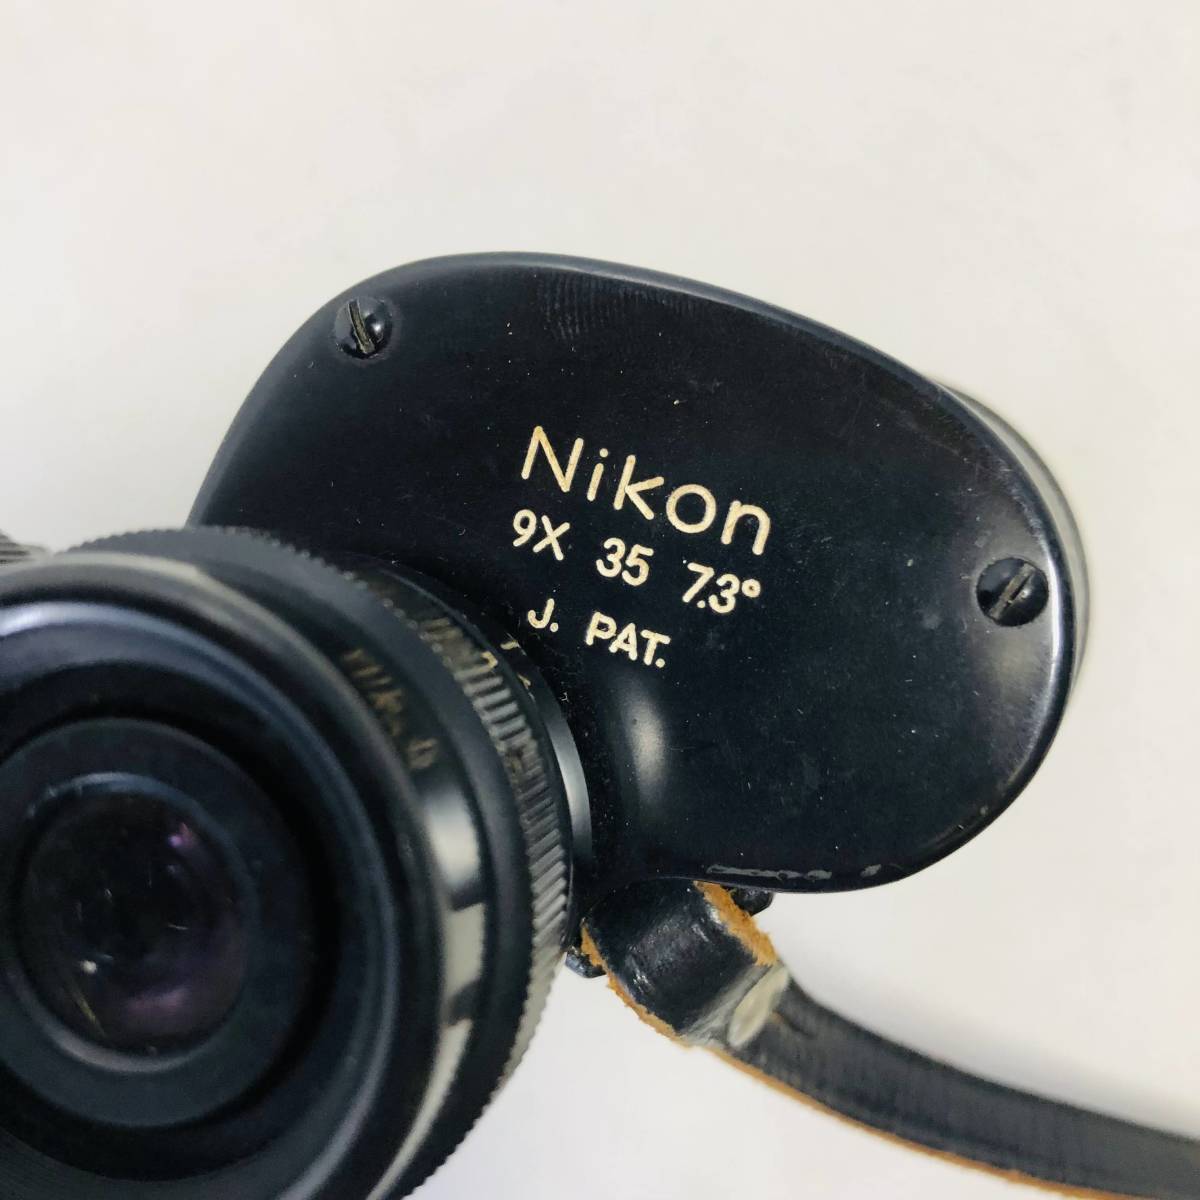 【双眼鏡】現状品 ニコン NIKON 双眼鏡 9×35 7.3°_画像7